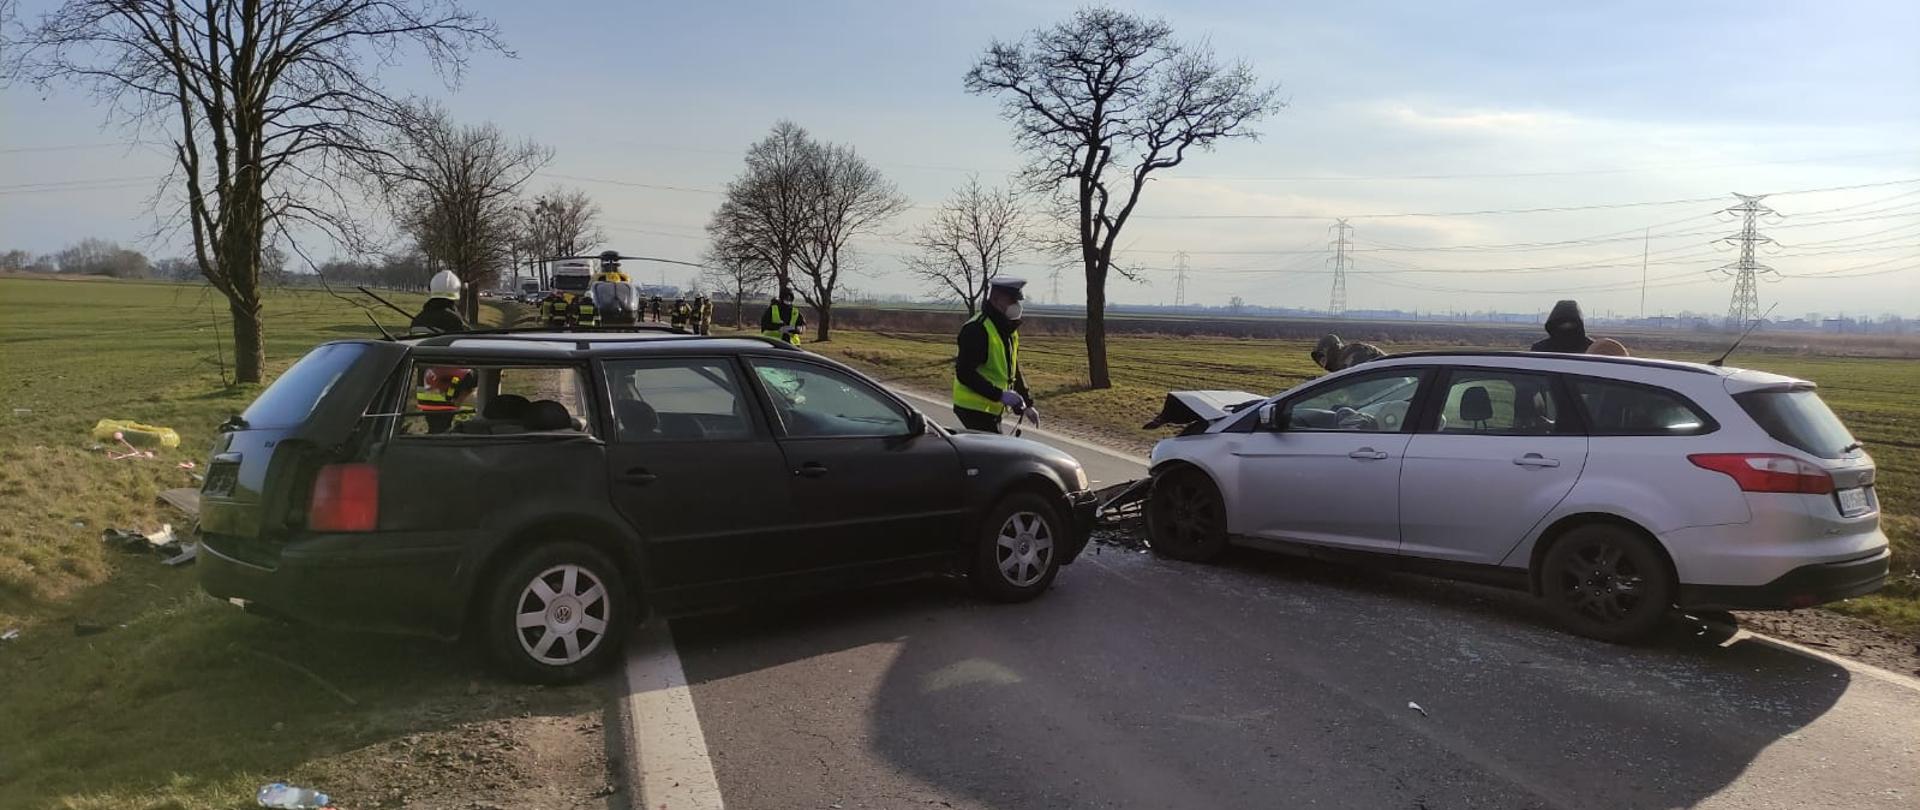 Wypadek samochodowy w Żernikach Wrocławskich